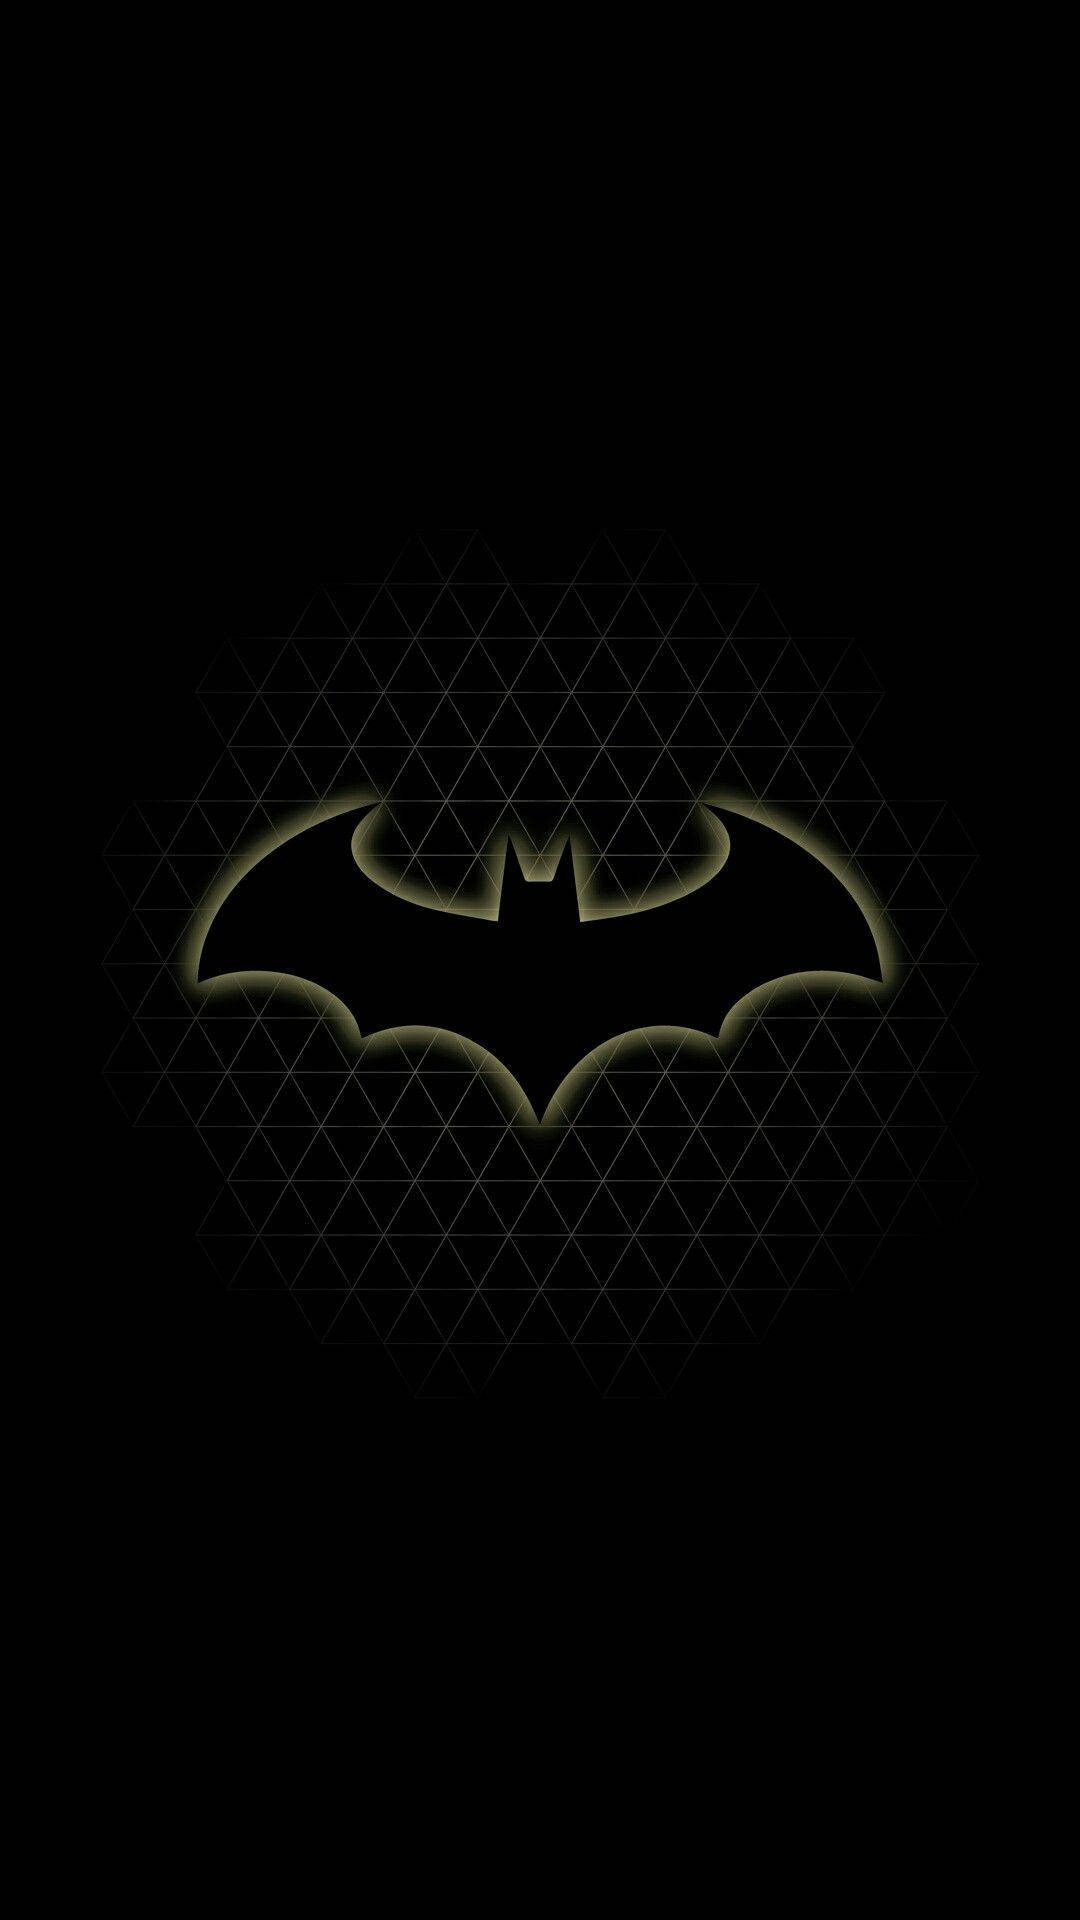 Batman Mørk Iphone 1080 X 1920 Wallpaper